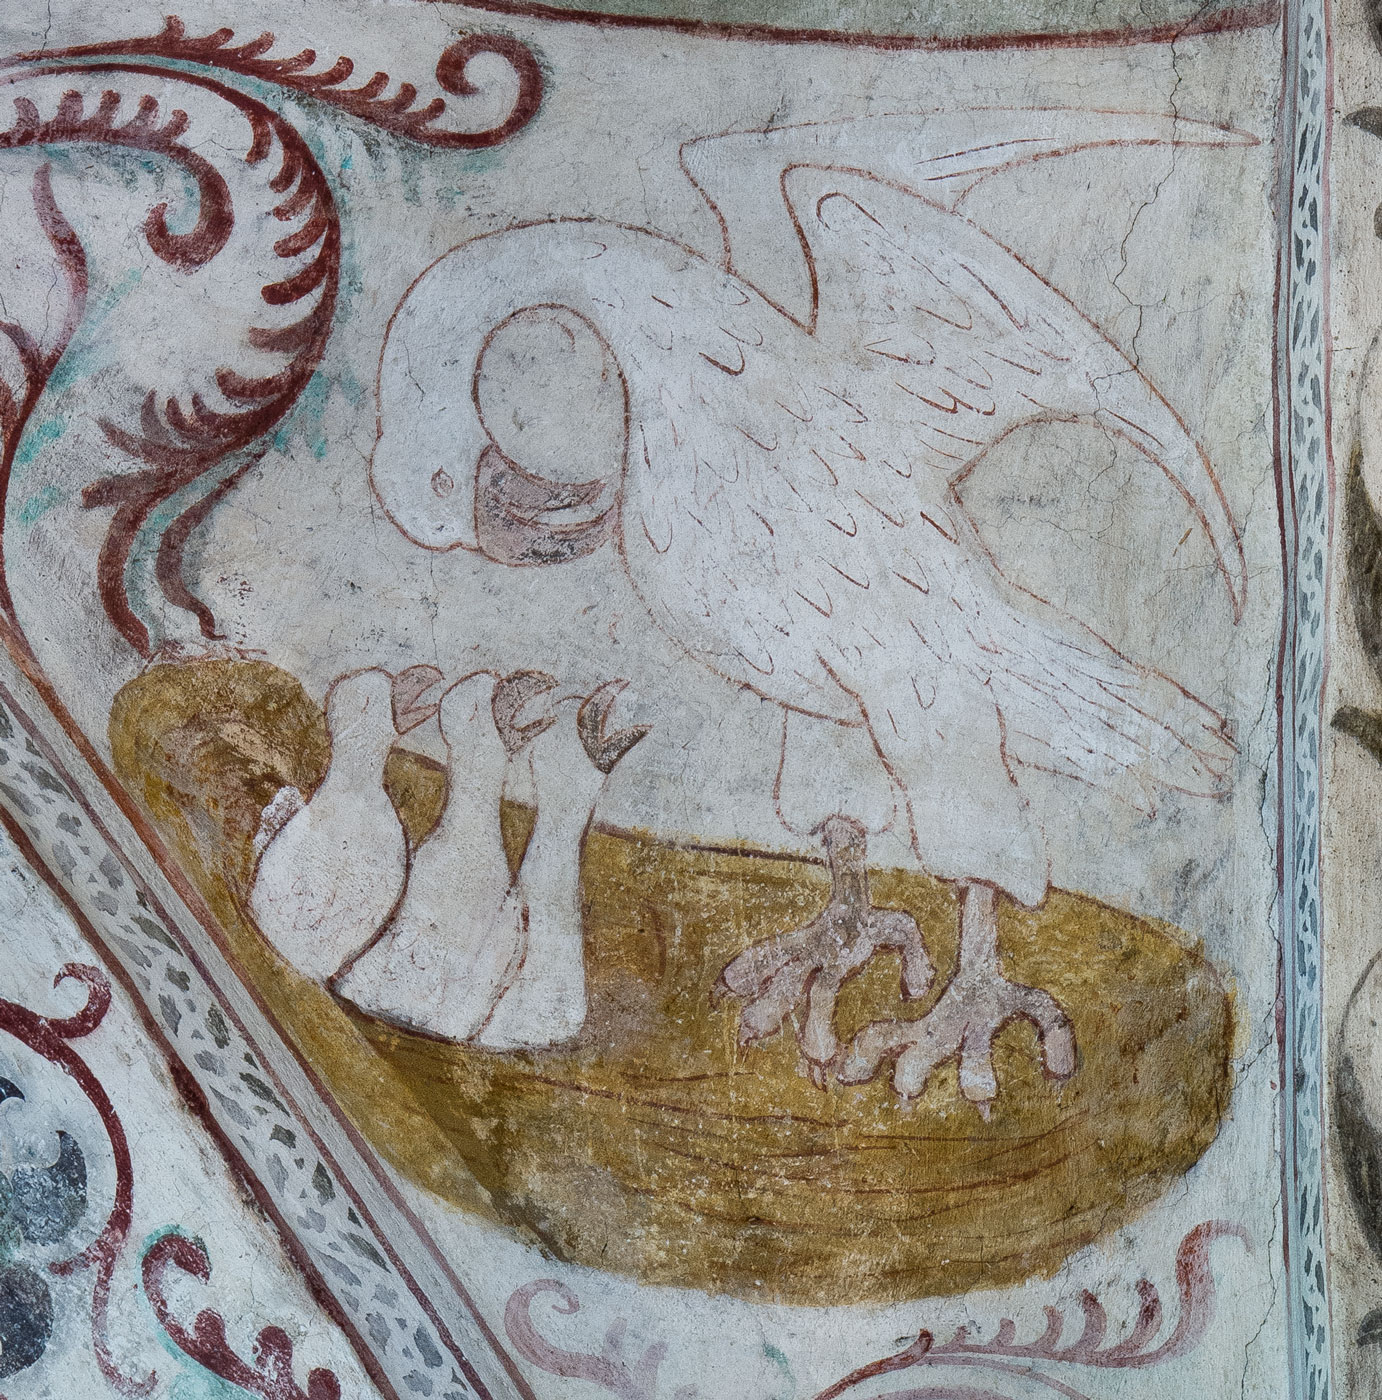 Pelikanen, som matar sina ungar med sitt eget blod, symbol för Kristi död och uppståndelse, liksom för den självuppoffrande kärleken (N) - Vänge kyrka